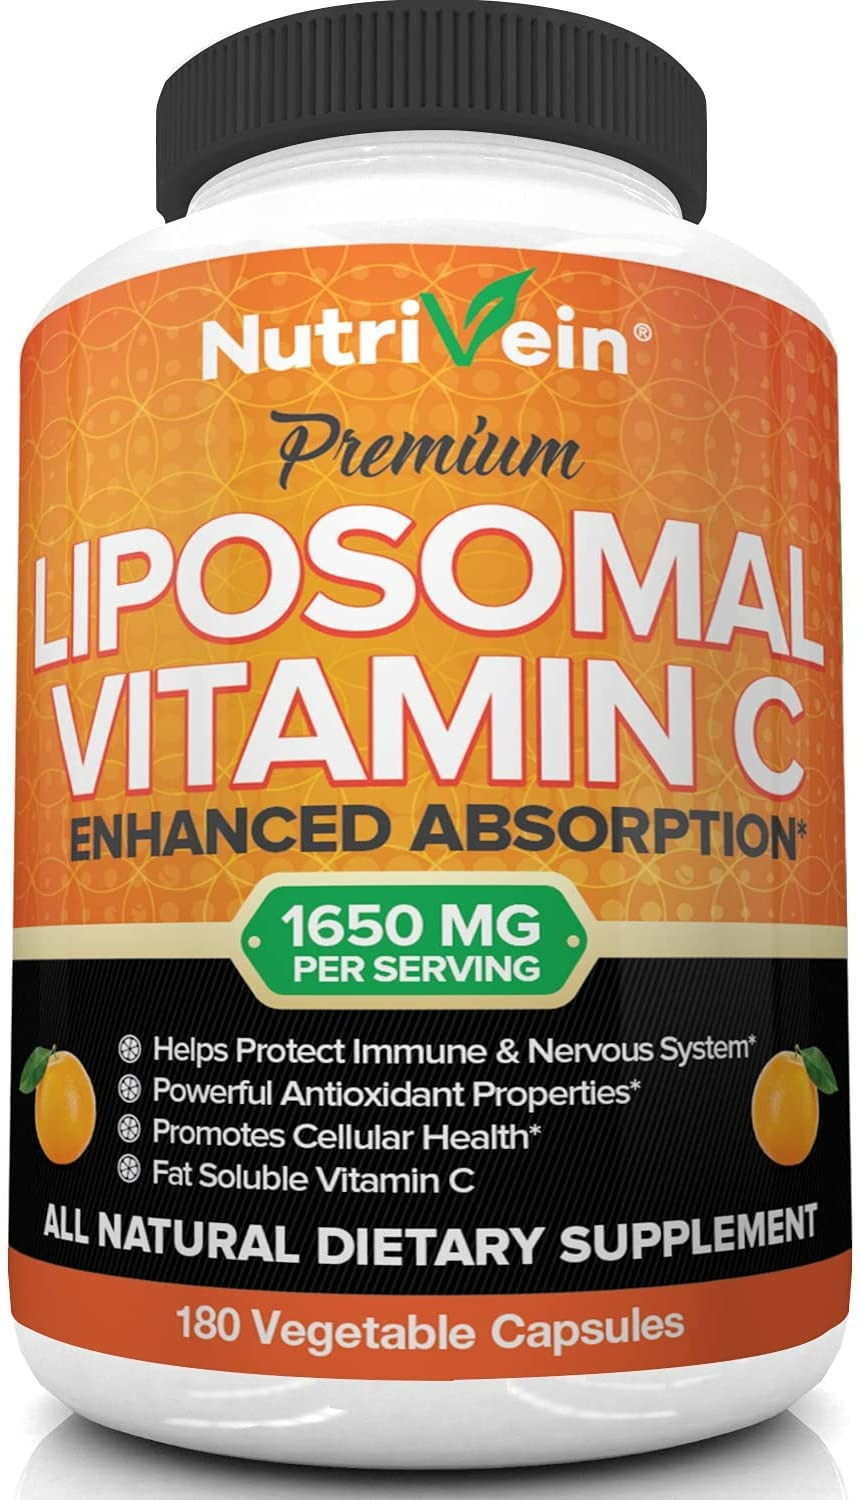 Nutrivein Liposomal Vitamin C - 180 Capsules